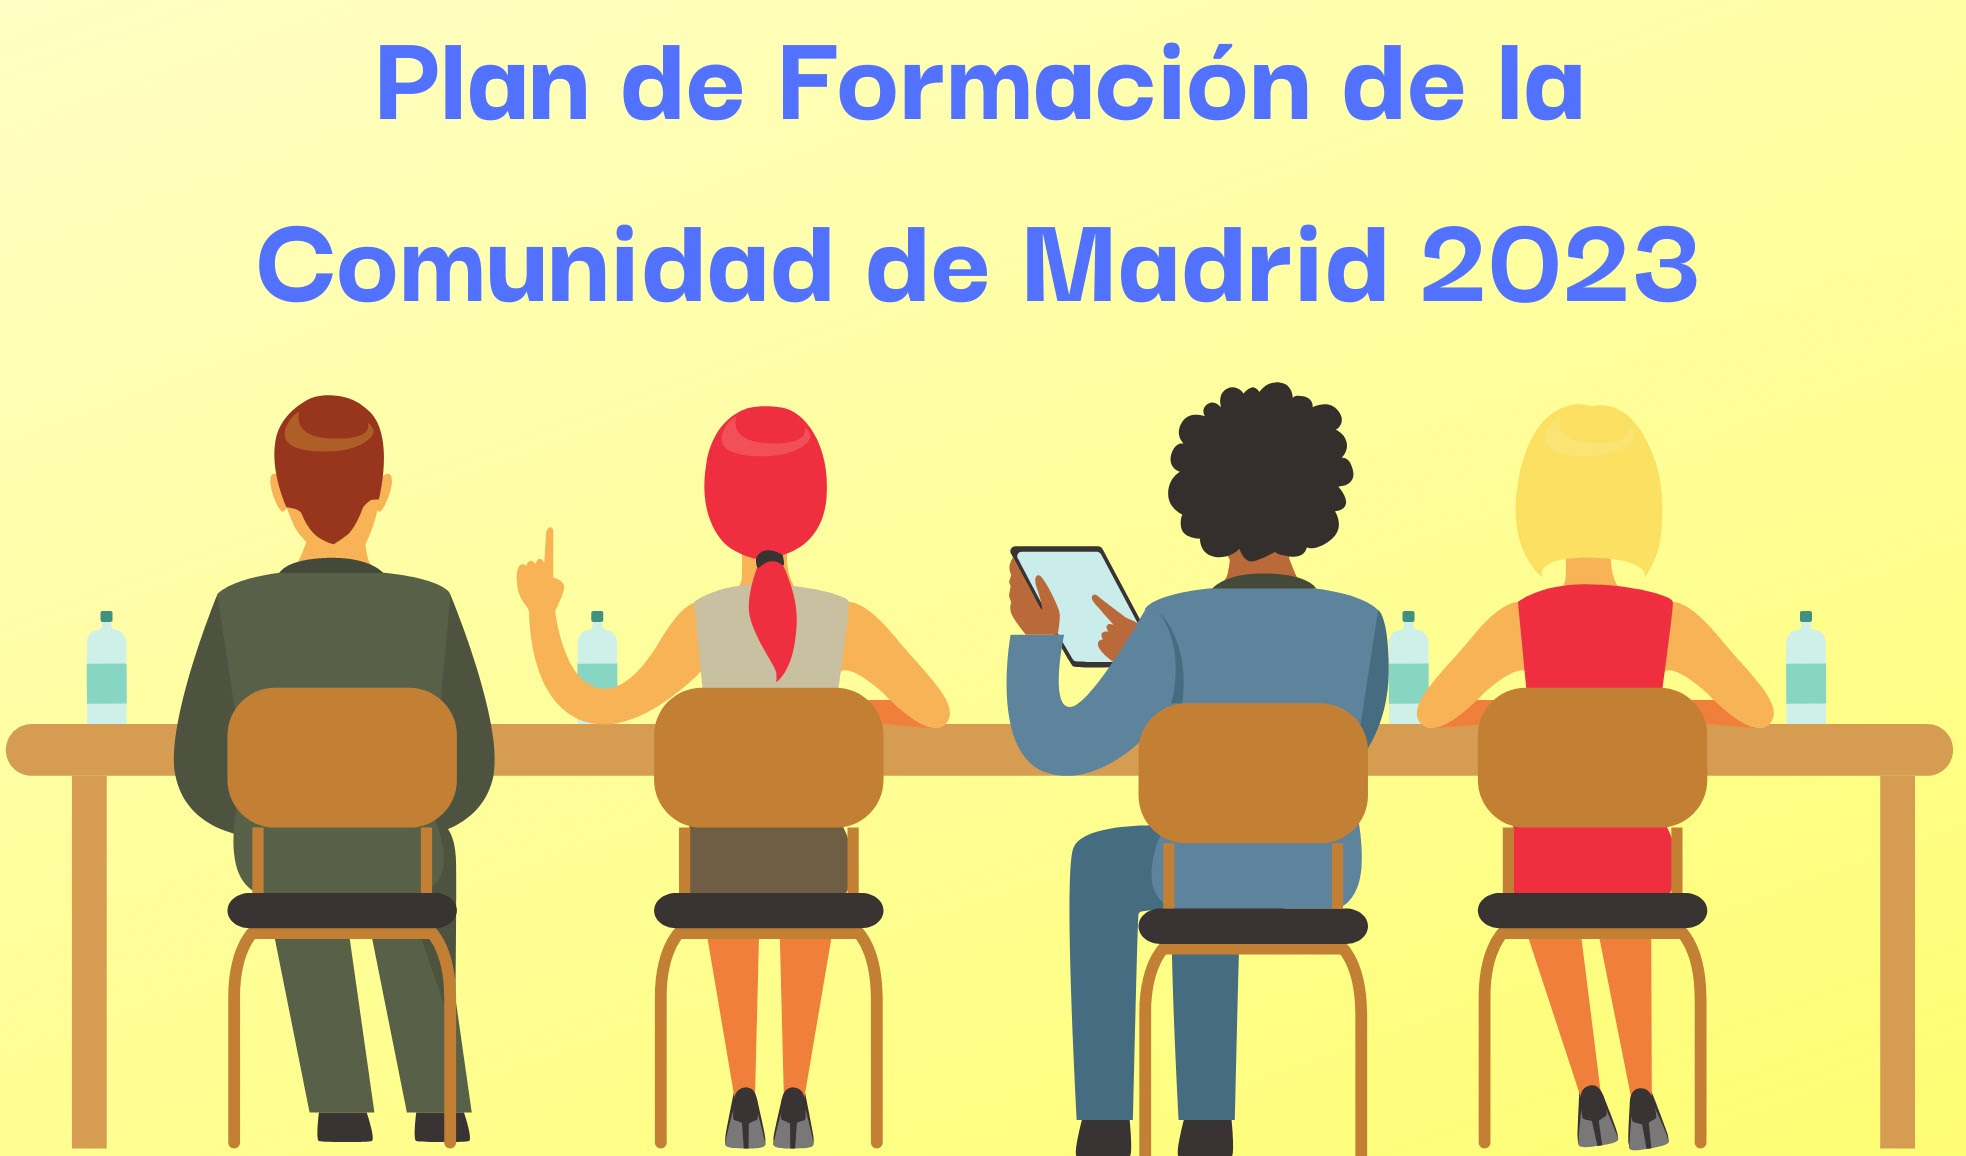 Plan de Formación de la Comunidad de Madrid para 2023